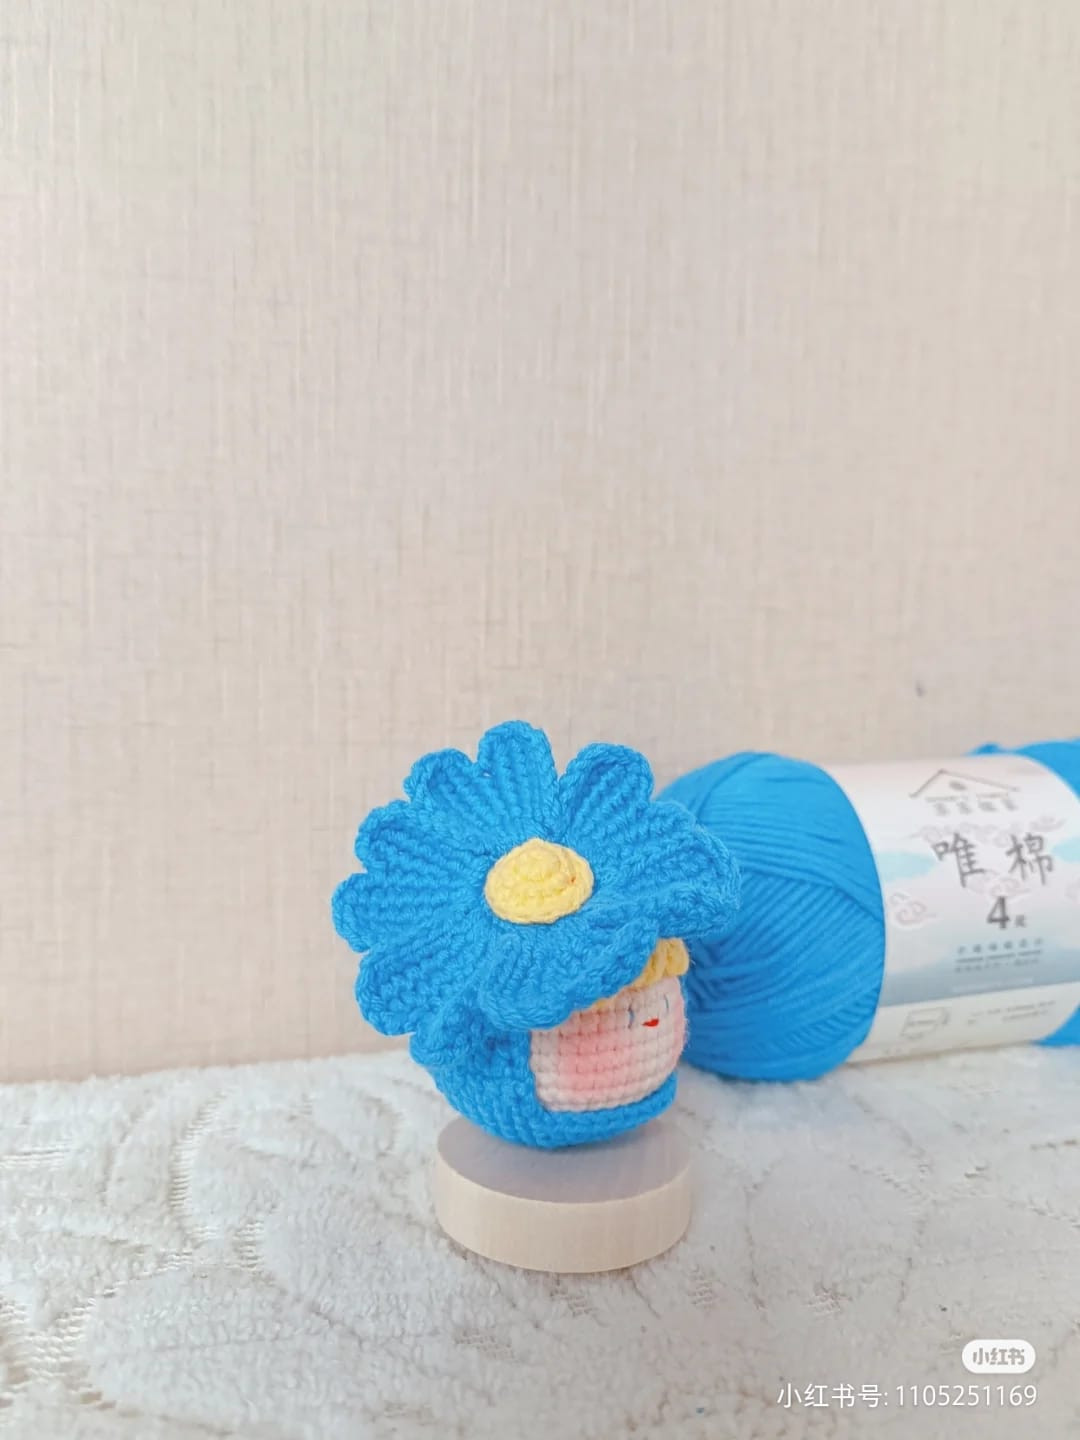 Crochet pattern for a doll's head wearing a blue flower hat